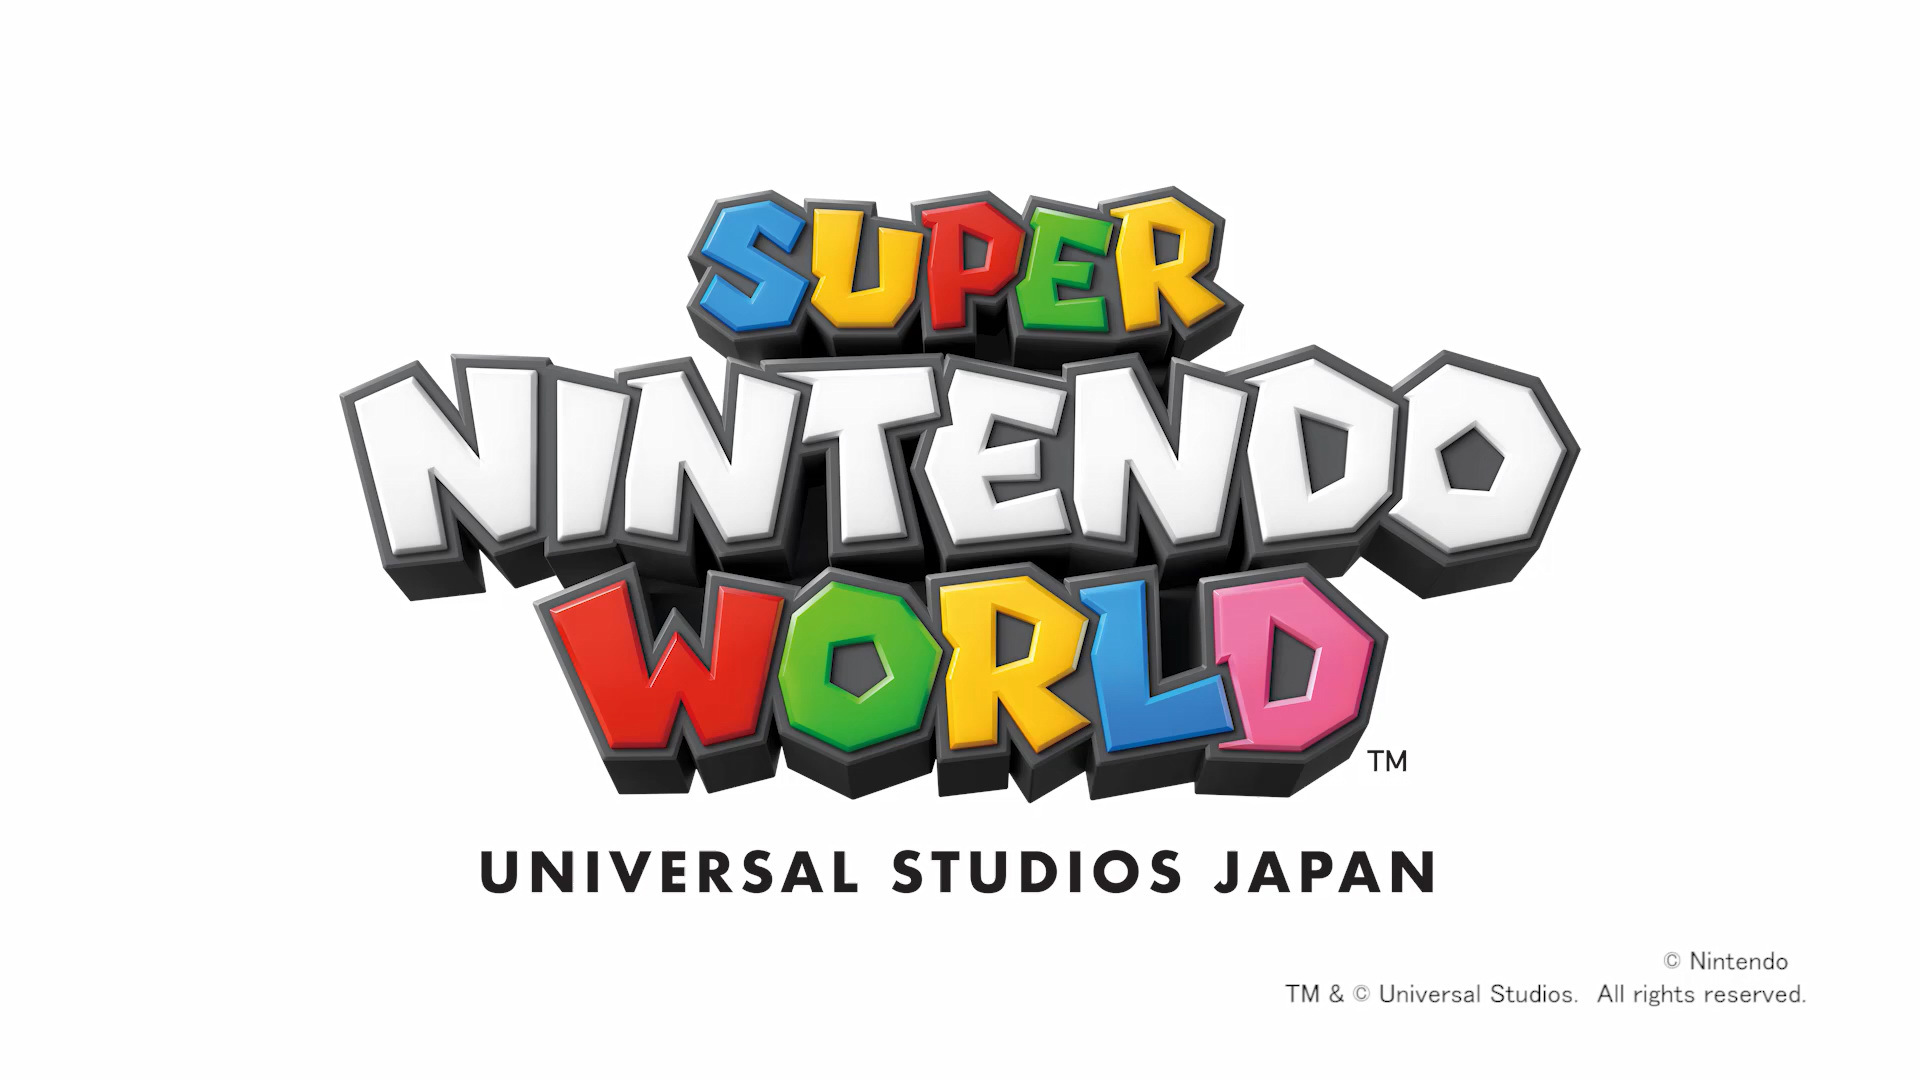 日本環球影城公布 Super Nintendo World 詳情配戴專屬腕帶闖蕩瑪利歐